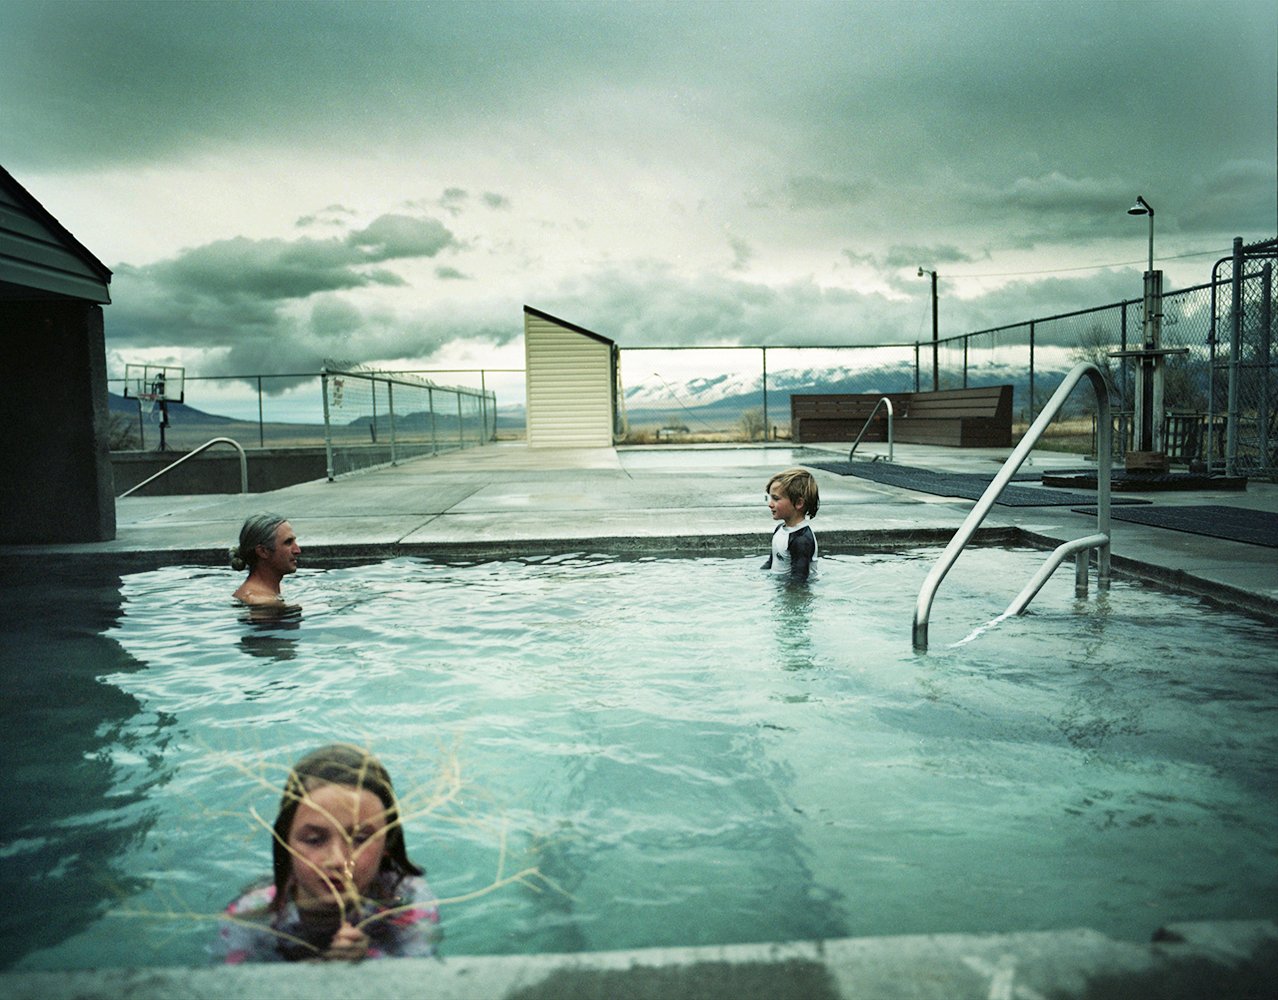  Hot Springs, City of Rocks, Idaho 2022 